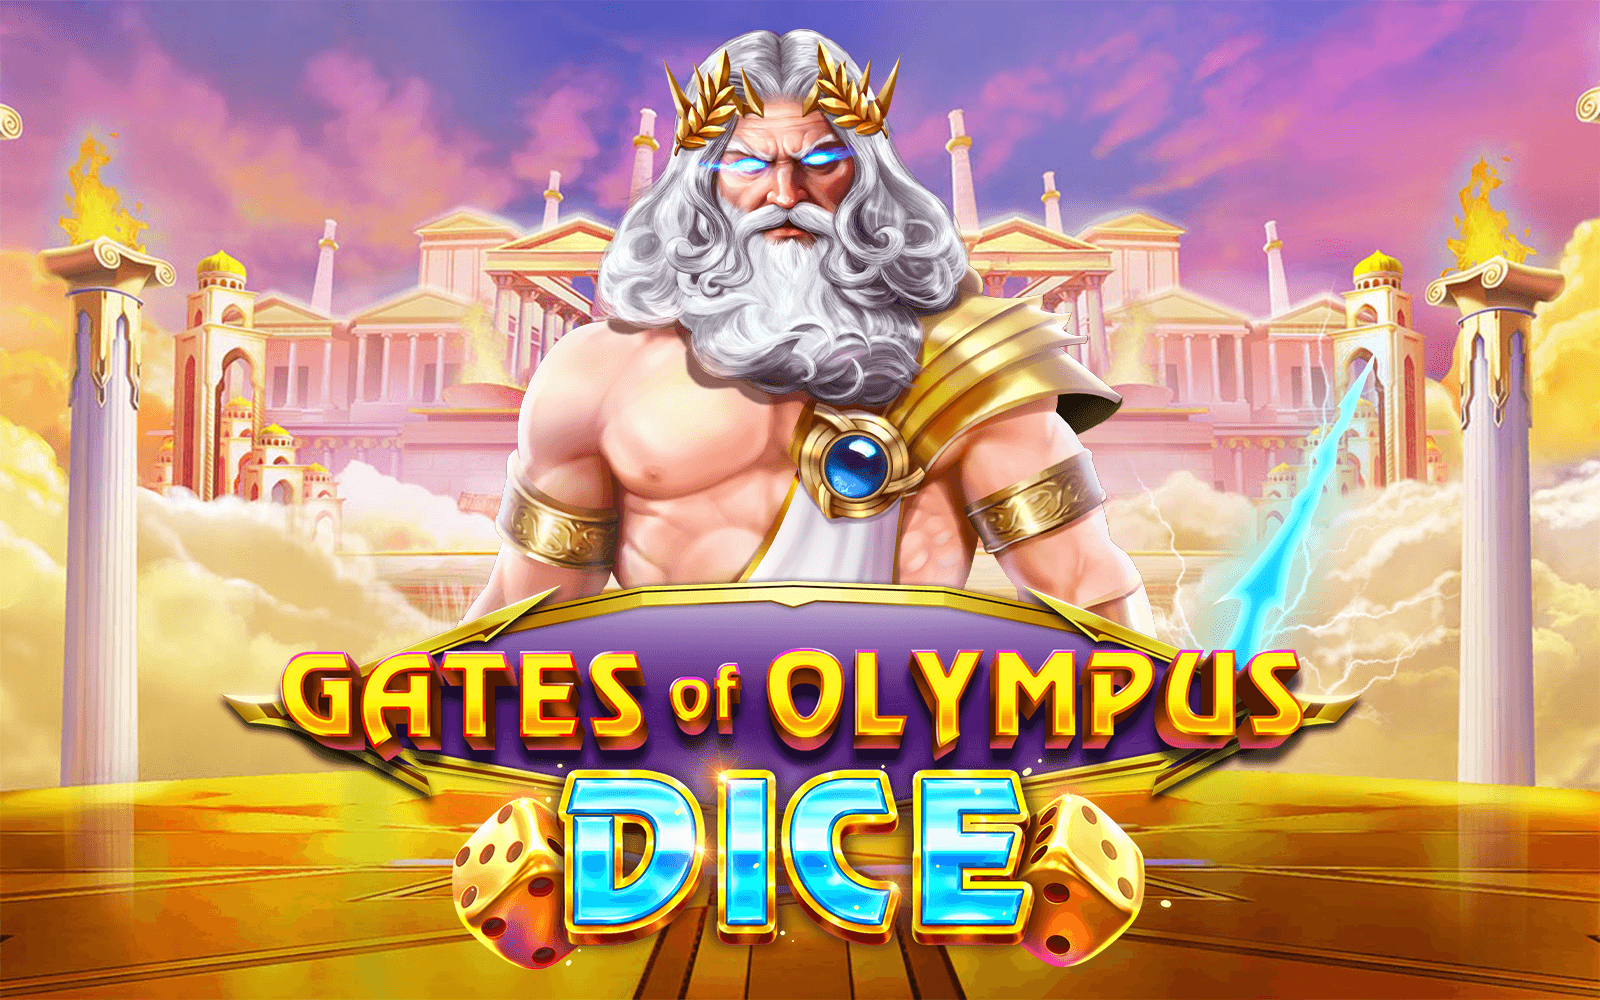 Zagraj w Gates of Olympus Dice w kasynie online Starcasino.be